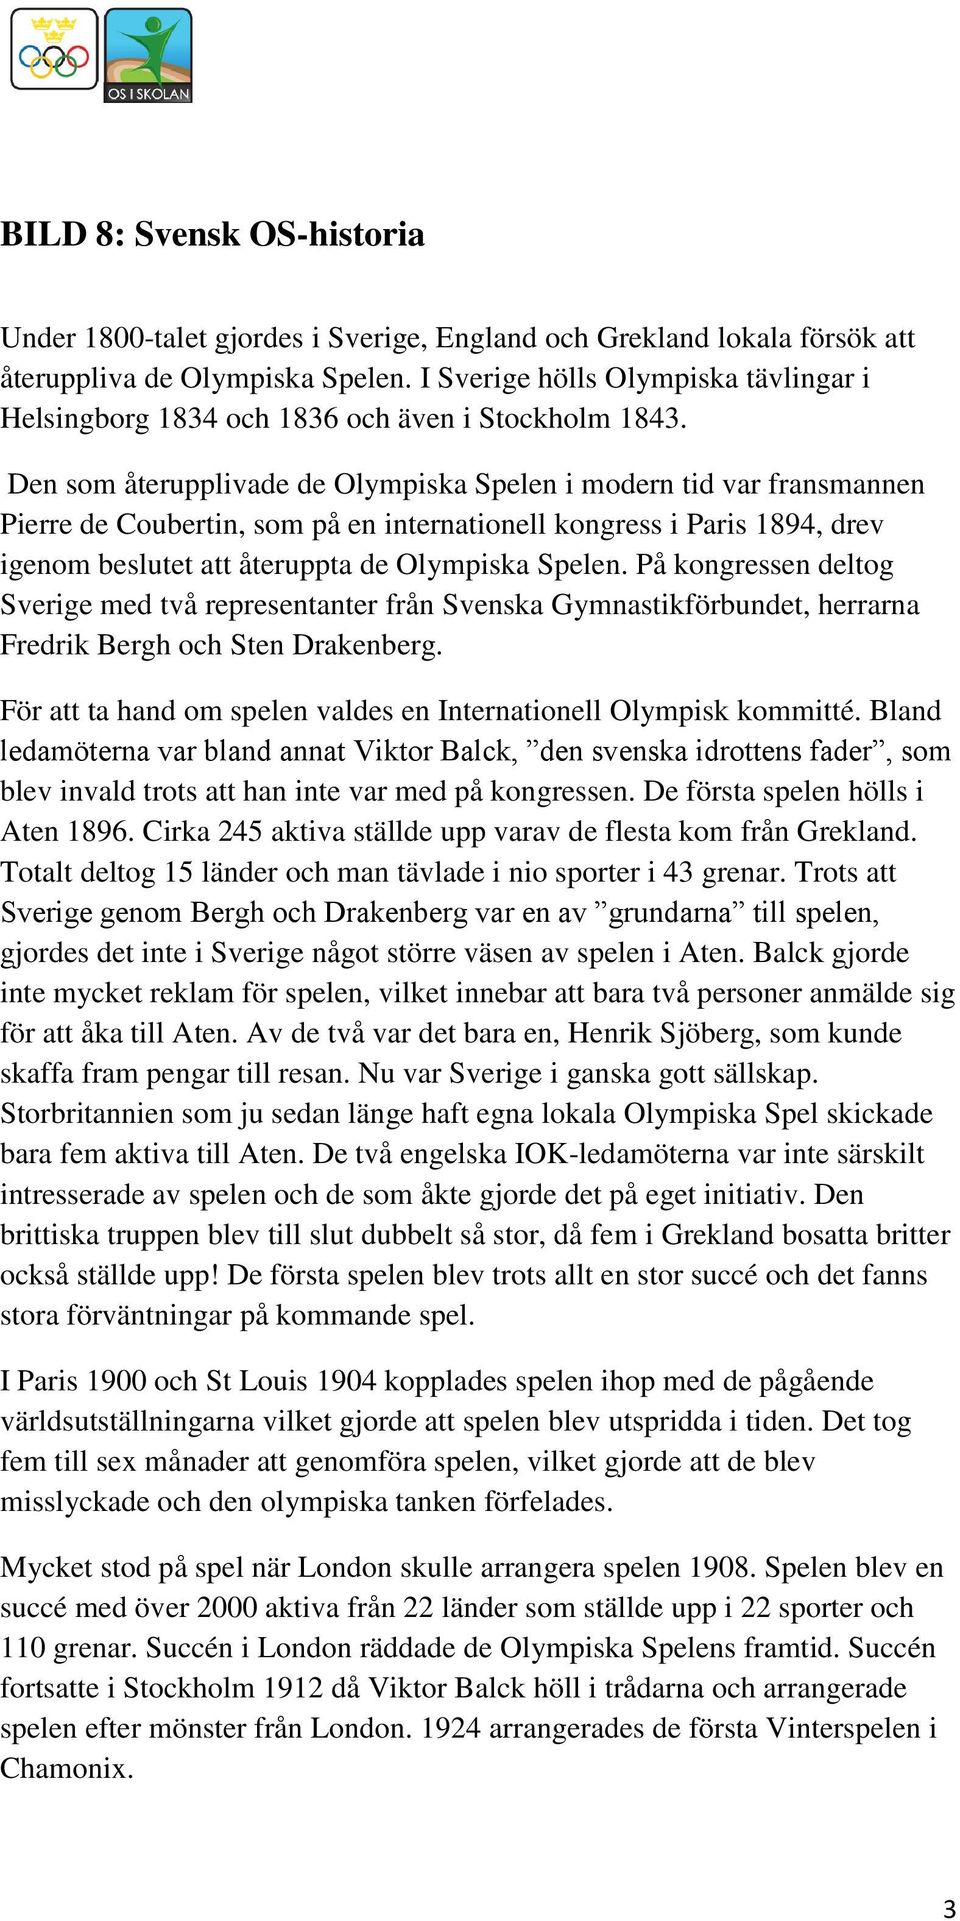 Den som återupplivade de Olympiska Spelen i modern tid var fransmannen Pierre de Coubertin, som på en internationell kongress i Paris 1894, drev igenom beslutet att återuppta de Olympiska Spelen.